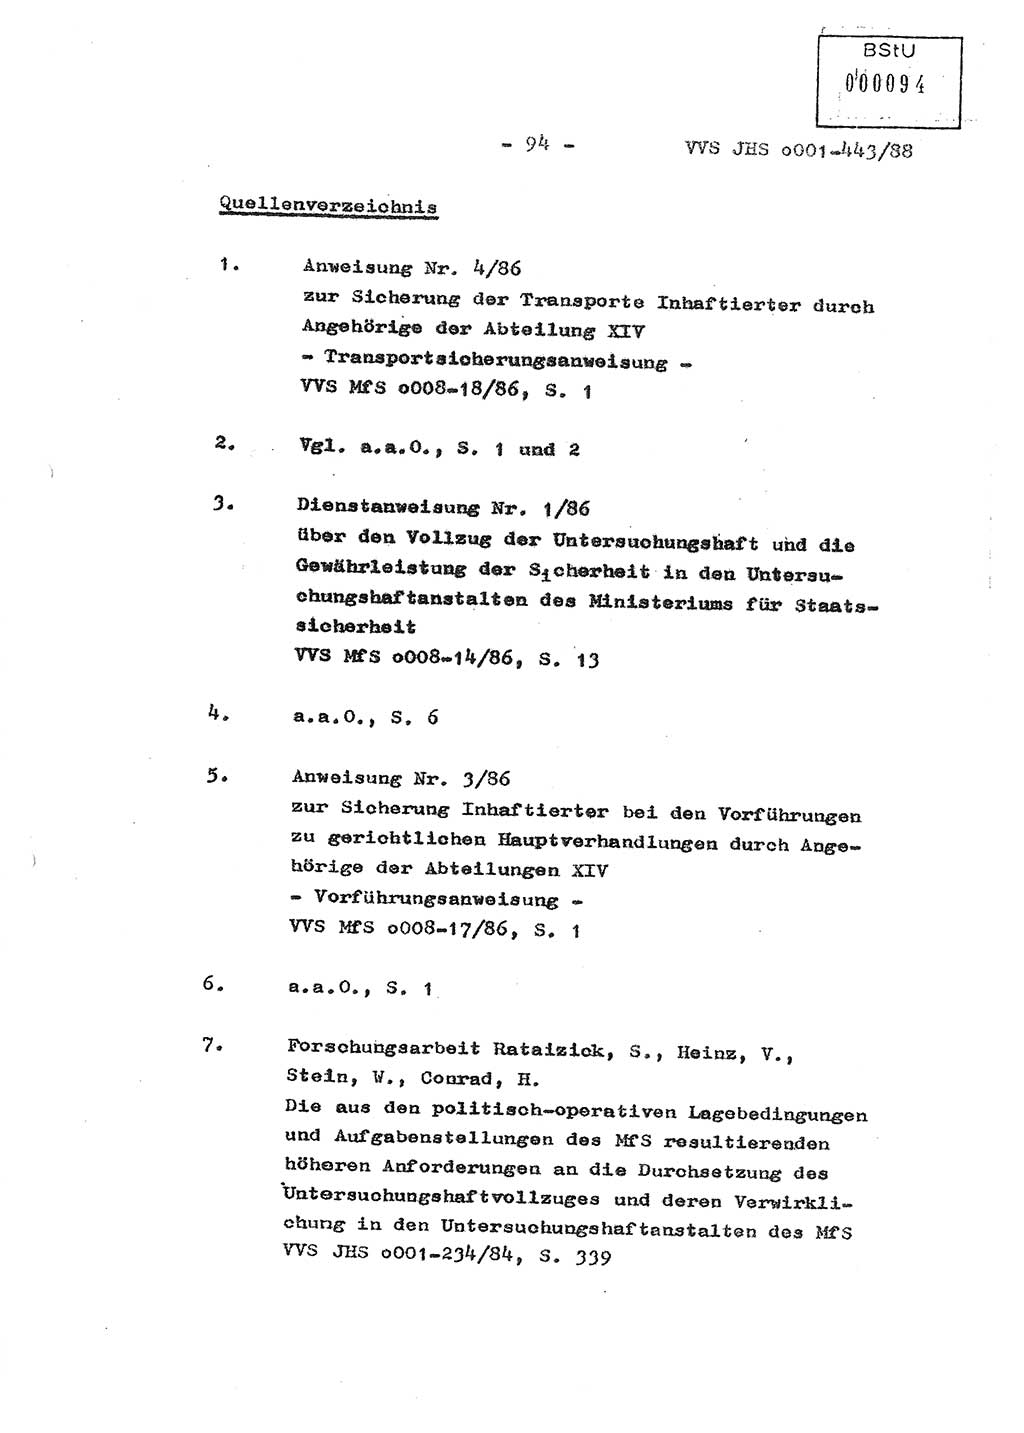 Diplomarbeit Hauptmann Michael Rast (Abt. ⅩⅣ), Major Bernd Rahaus (Abt. ⅩⅣ), Ministerium für Staatssicherheit (MfS) [Deutsche Demokratische Republik (DDR)], Juristische Hochschule (JHS), Vertrauliche Verschlußsache (VVS) o001-443/88, Potsdam 1988, Seite 94 (Dipl.-Arb. MfS DDR JHS VVS o001-443/88 1988, S. 94)